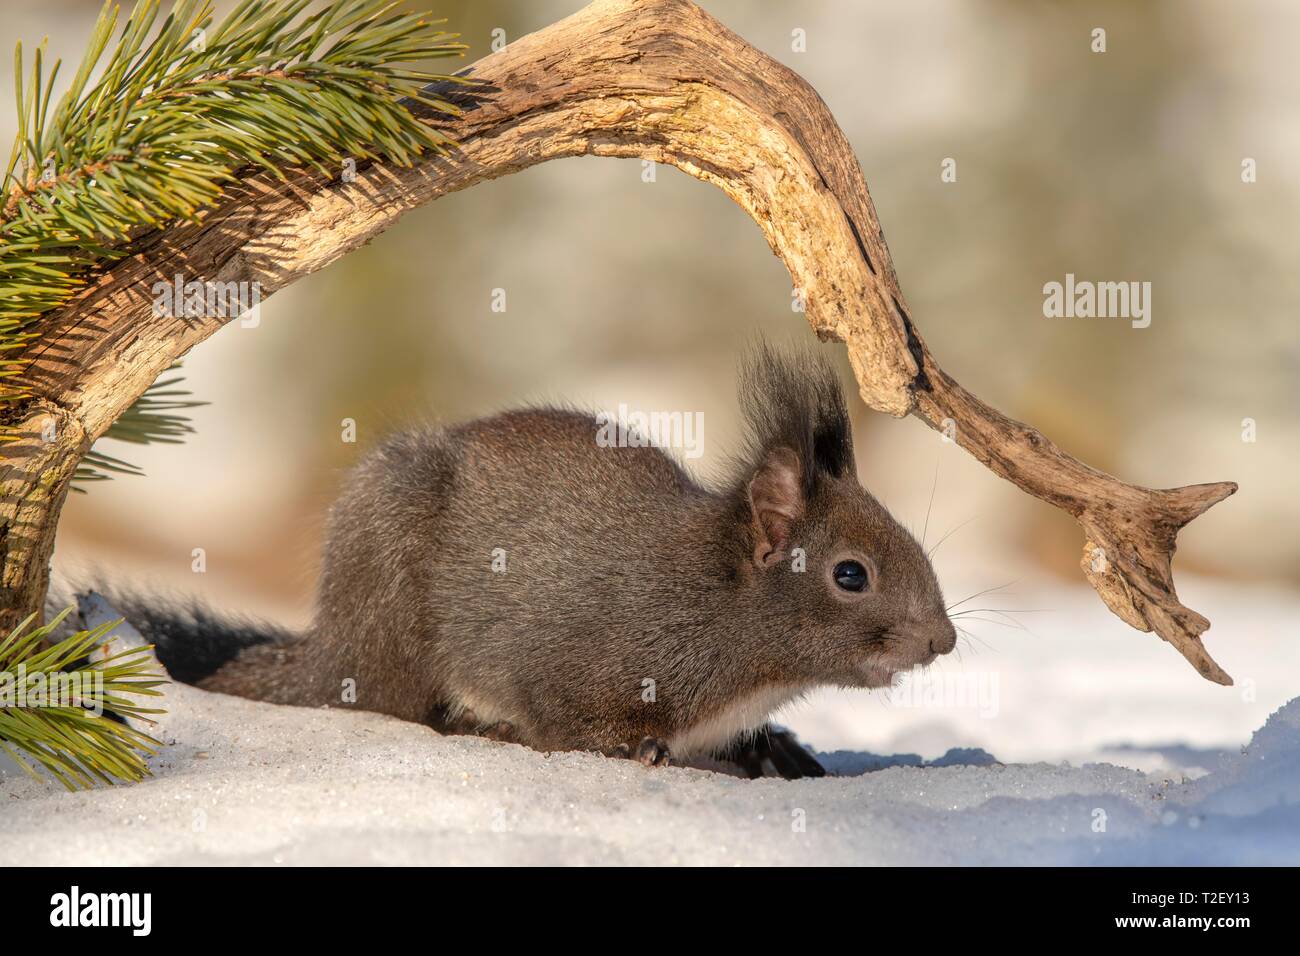 Eurasian red squirrel (Sciurus vulgaris), in the snow, Austria Stock Photo